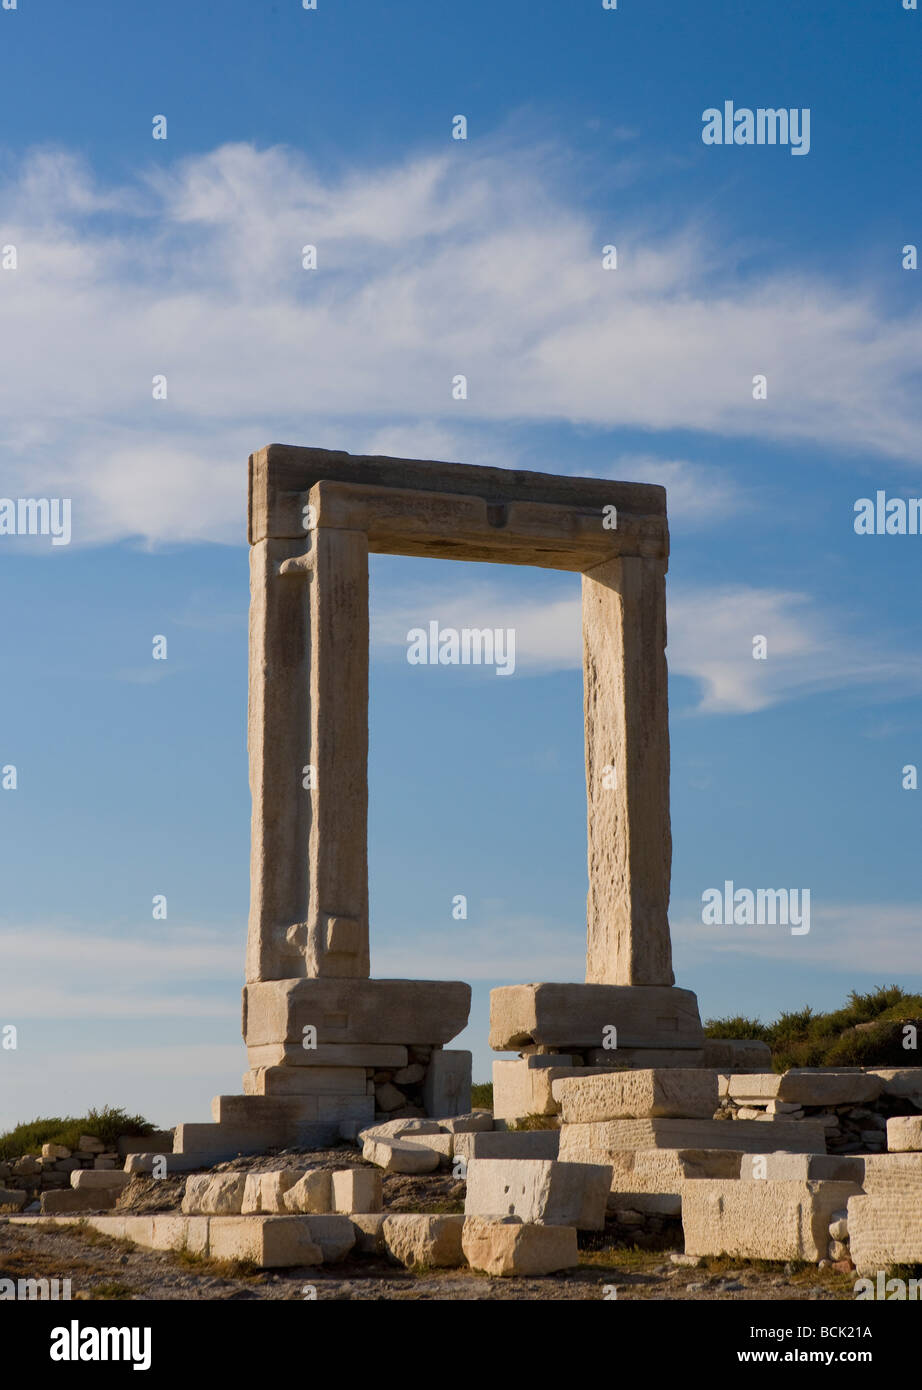 Ruines de la porte du temple d'Apollon appelé Portara sur l'île de Naxos Grèce Couple en silhouette au coucher du soleil Banque D'Images